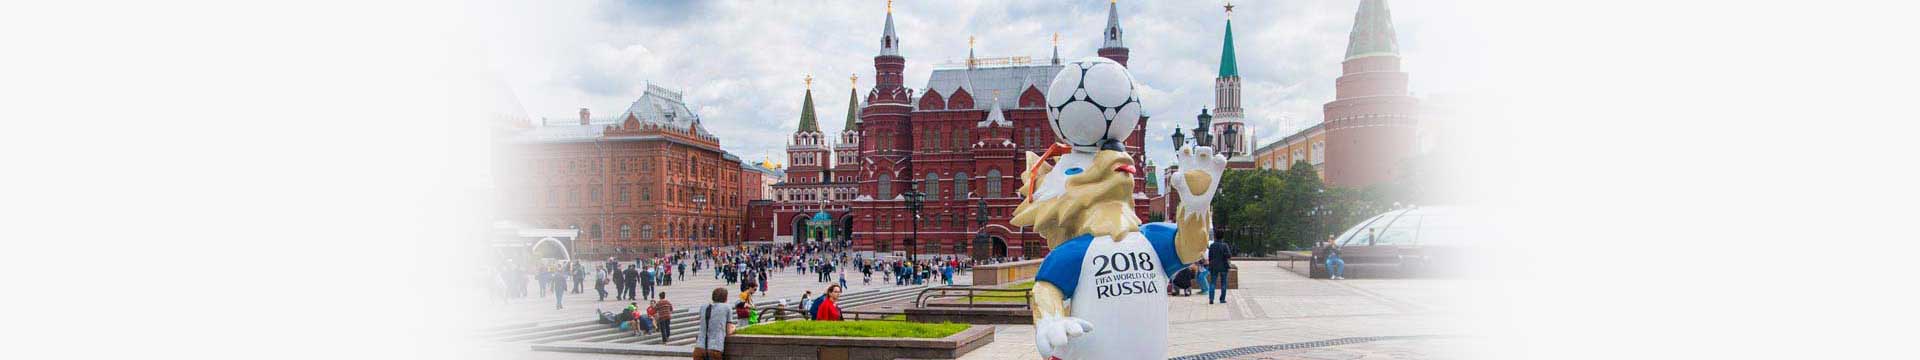 วางแผนเก็บเงินไปดูบอลโลก 2018 ที่รัสเซีย เตรียมตัวอย่างไรดี